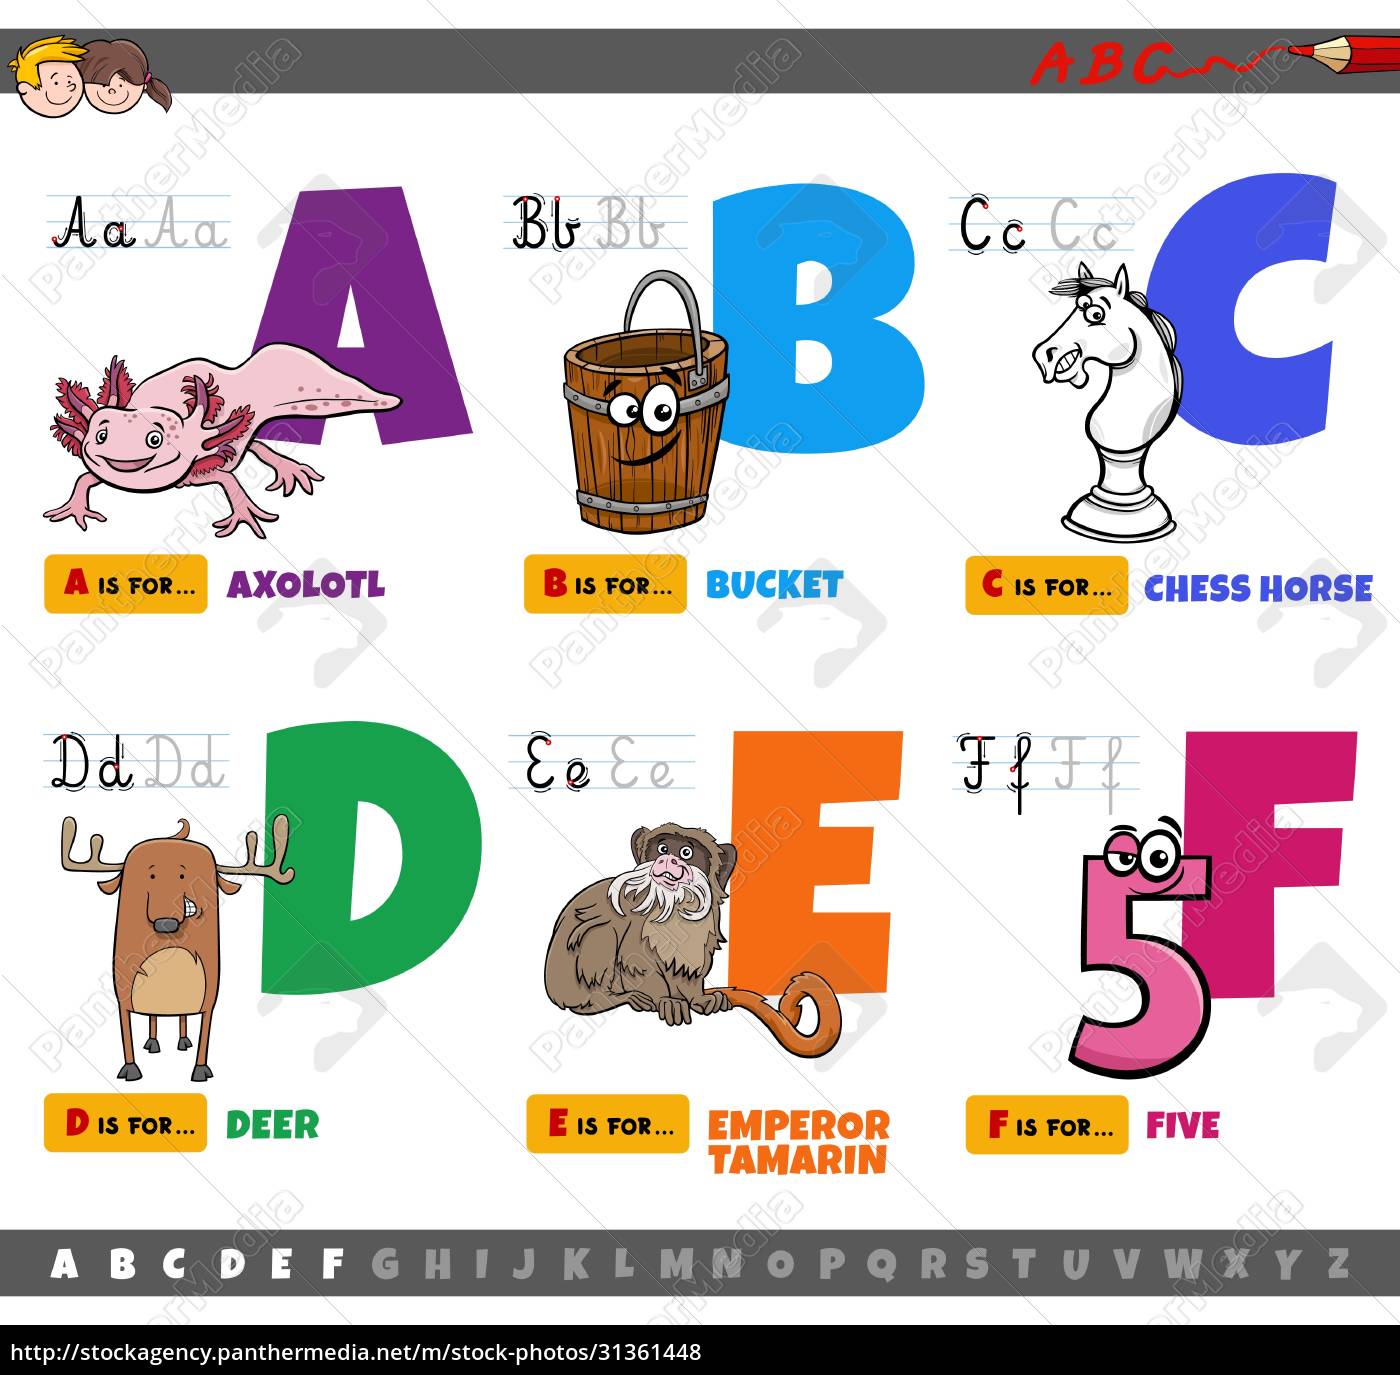 Lettere dell'alfabeto per bambini